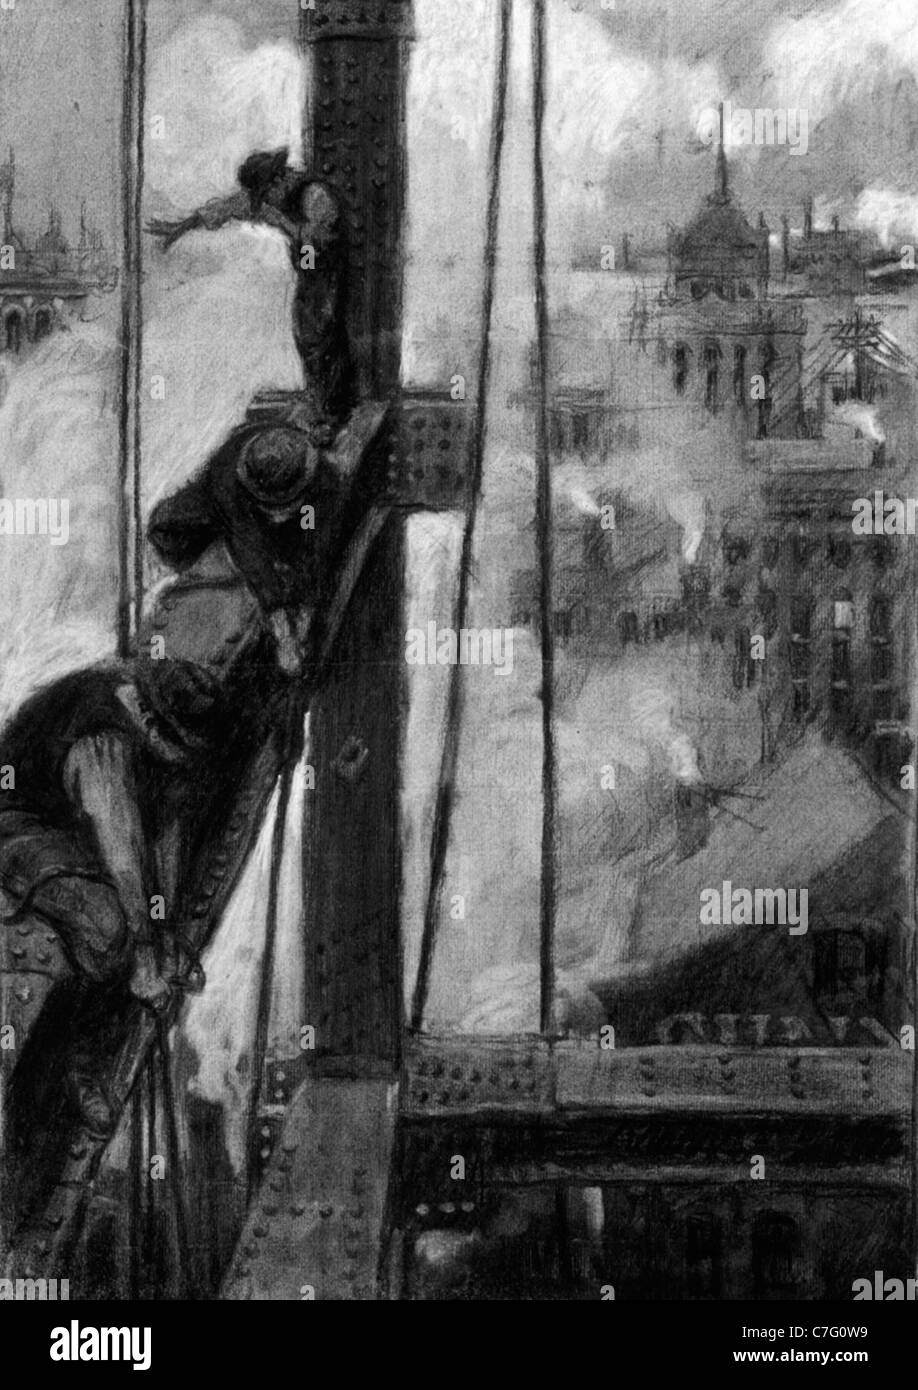 Schizzo di tre lavoratori ironworkers sulla trave con vapore e tetti in background, New York City, circa 1904 Foto Stock